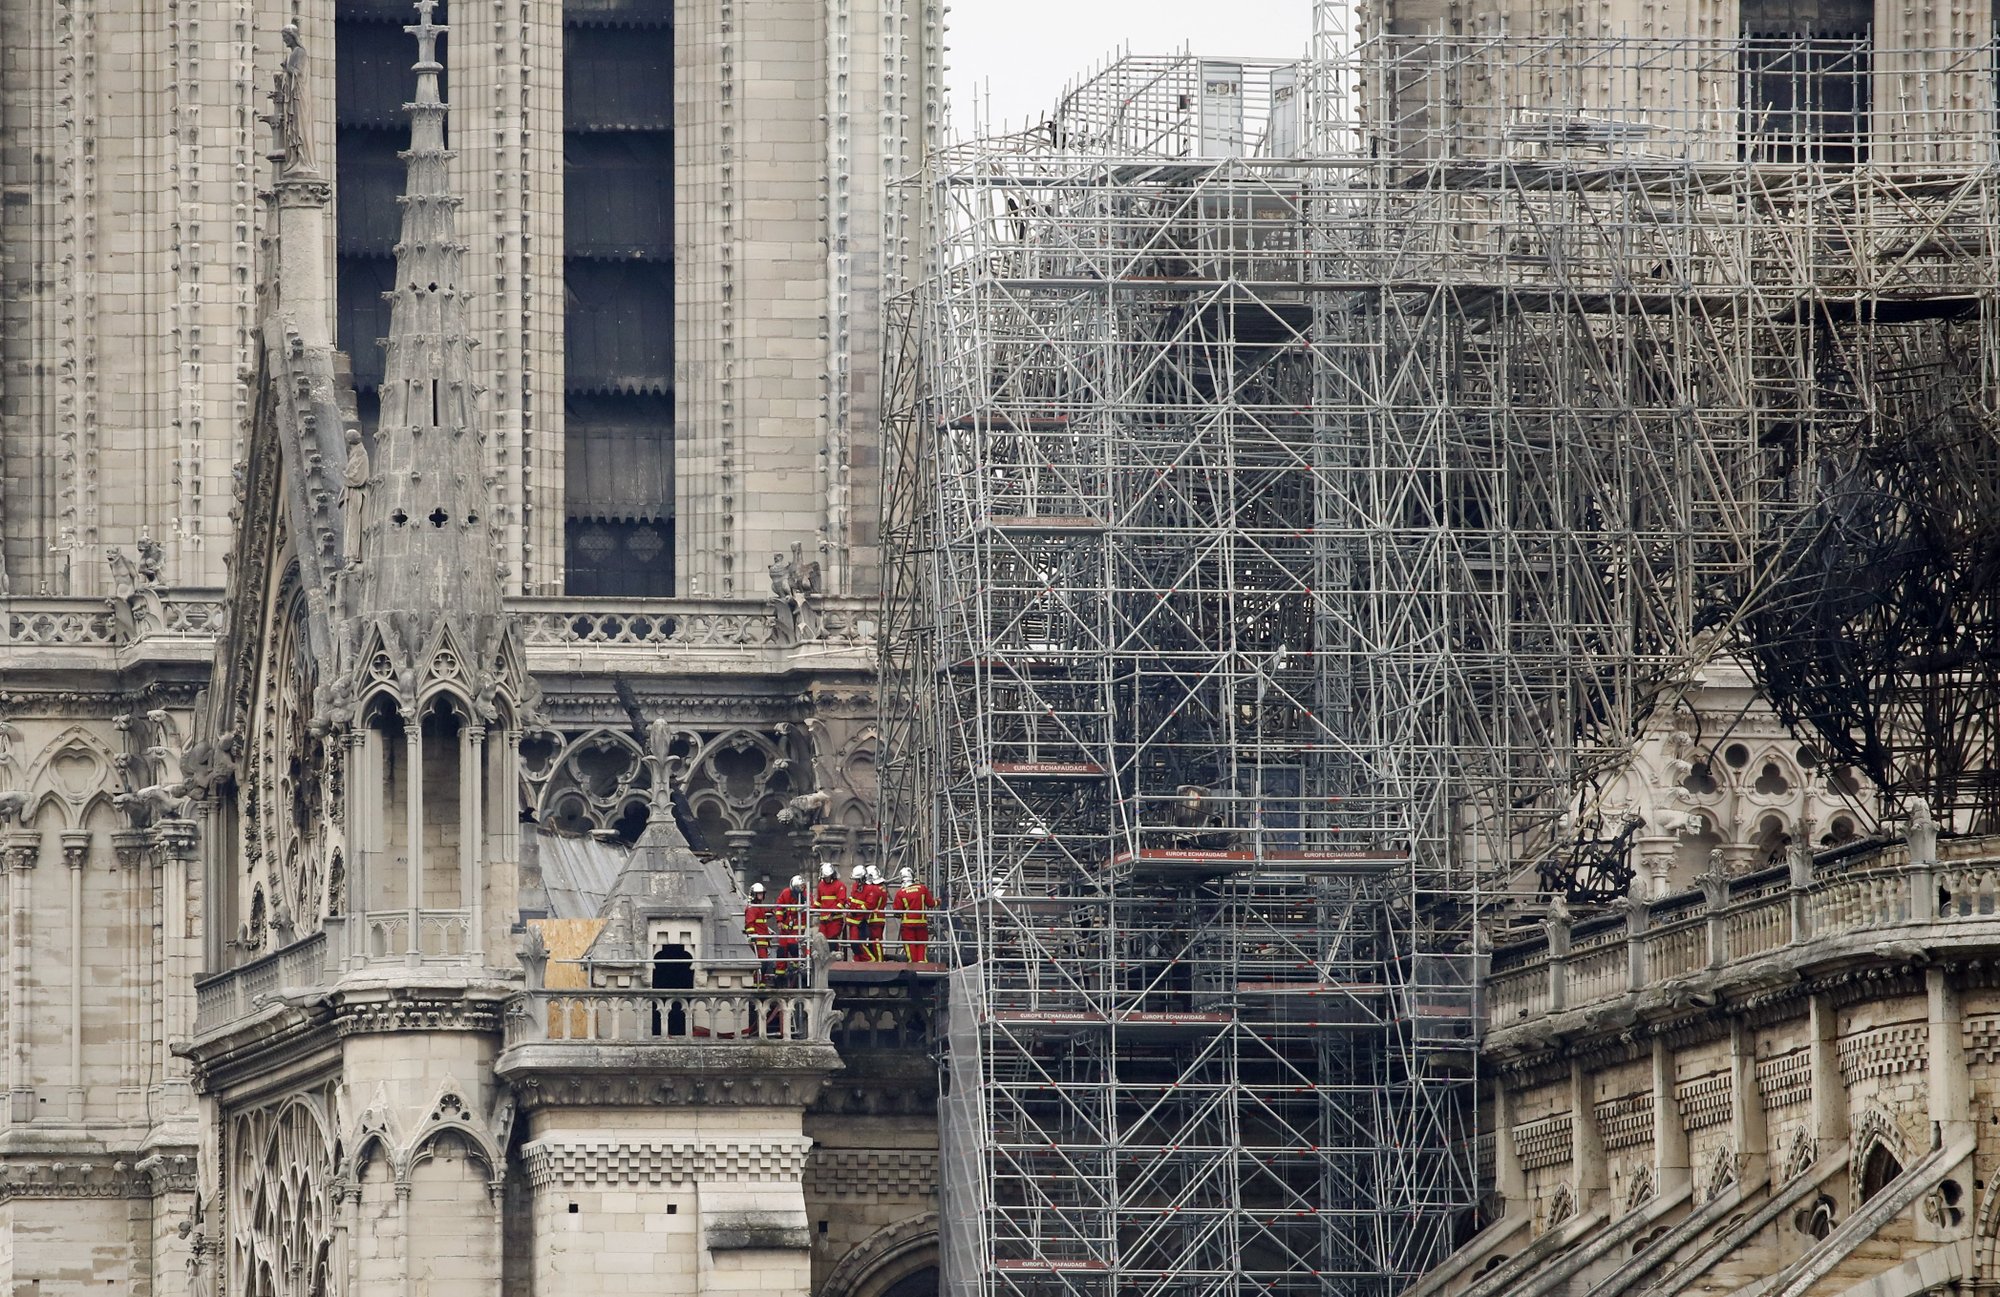 Tras el fuego, la atención se dirige al futuro de Notre Dame